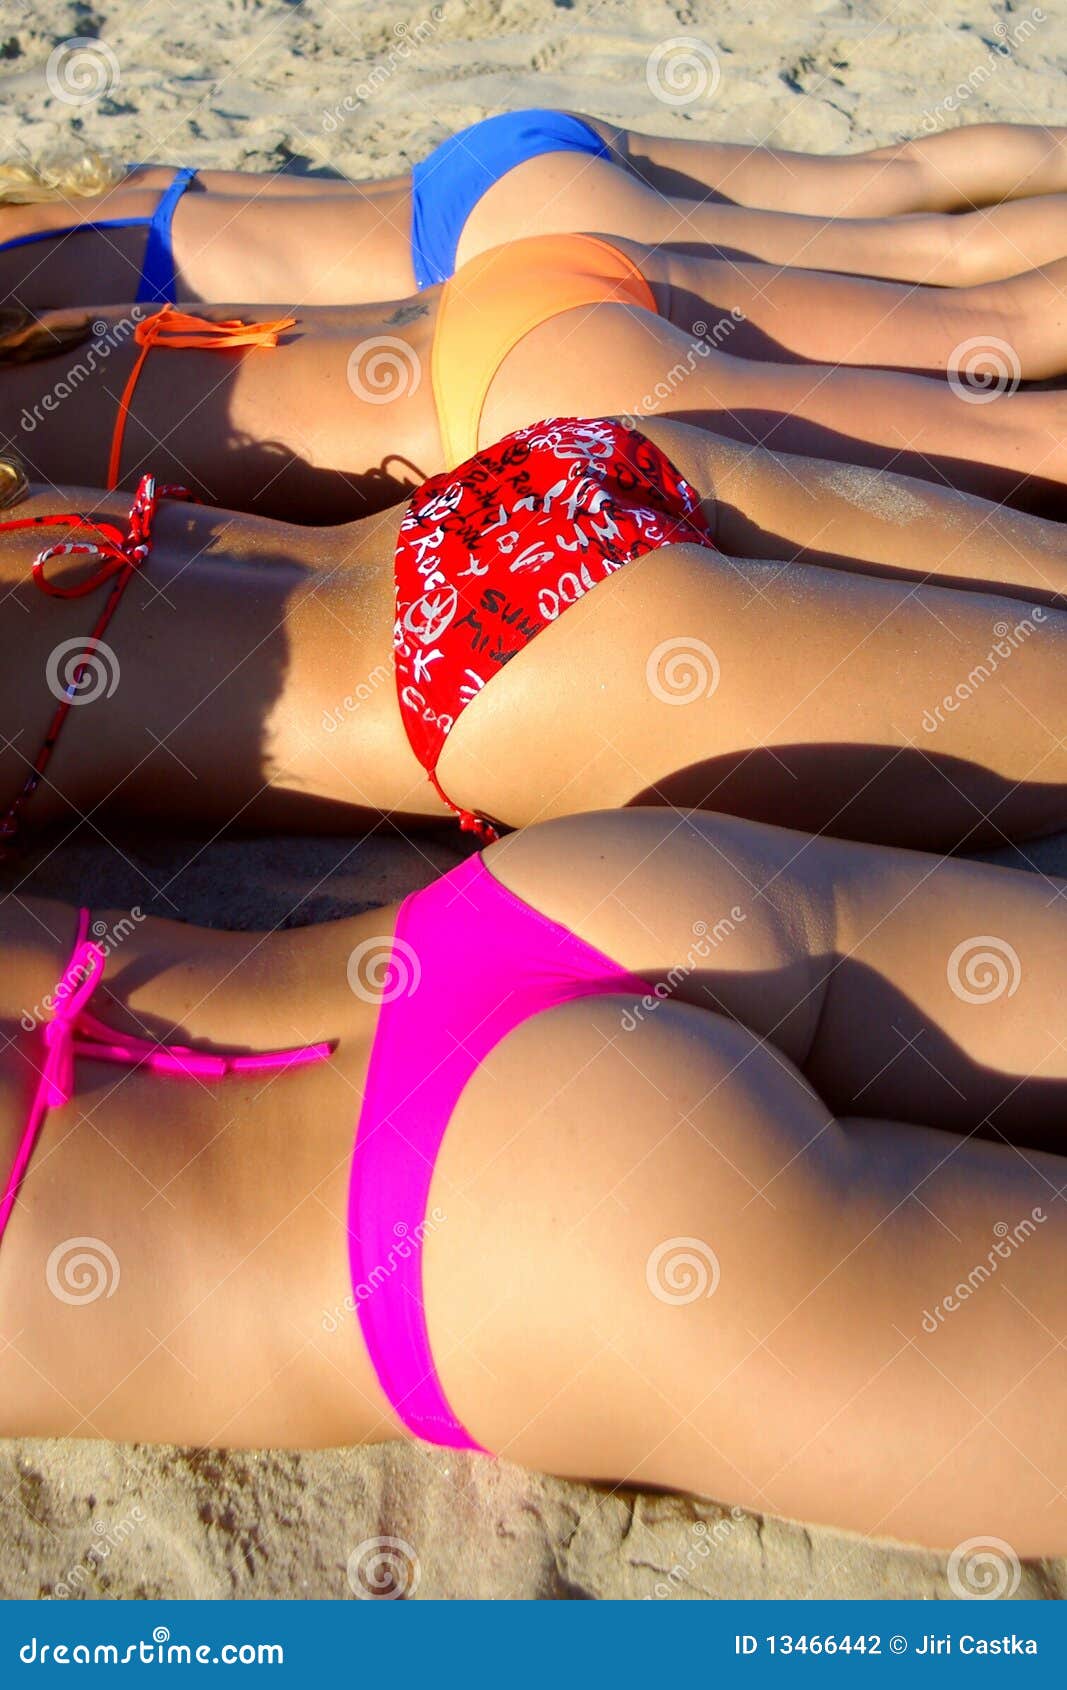 cordelia tan add best bikini butt pics photo